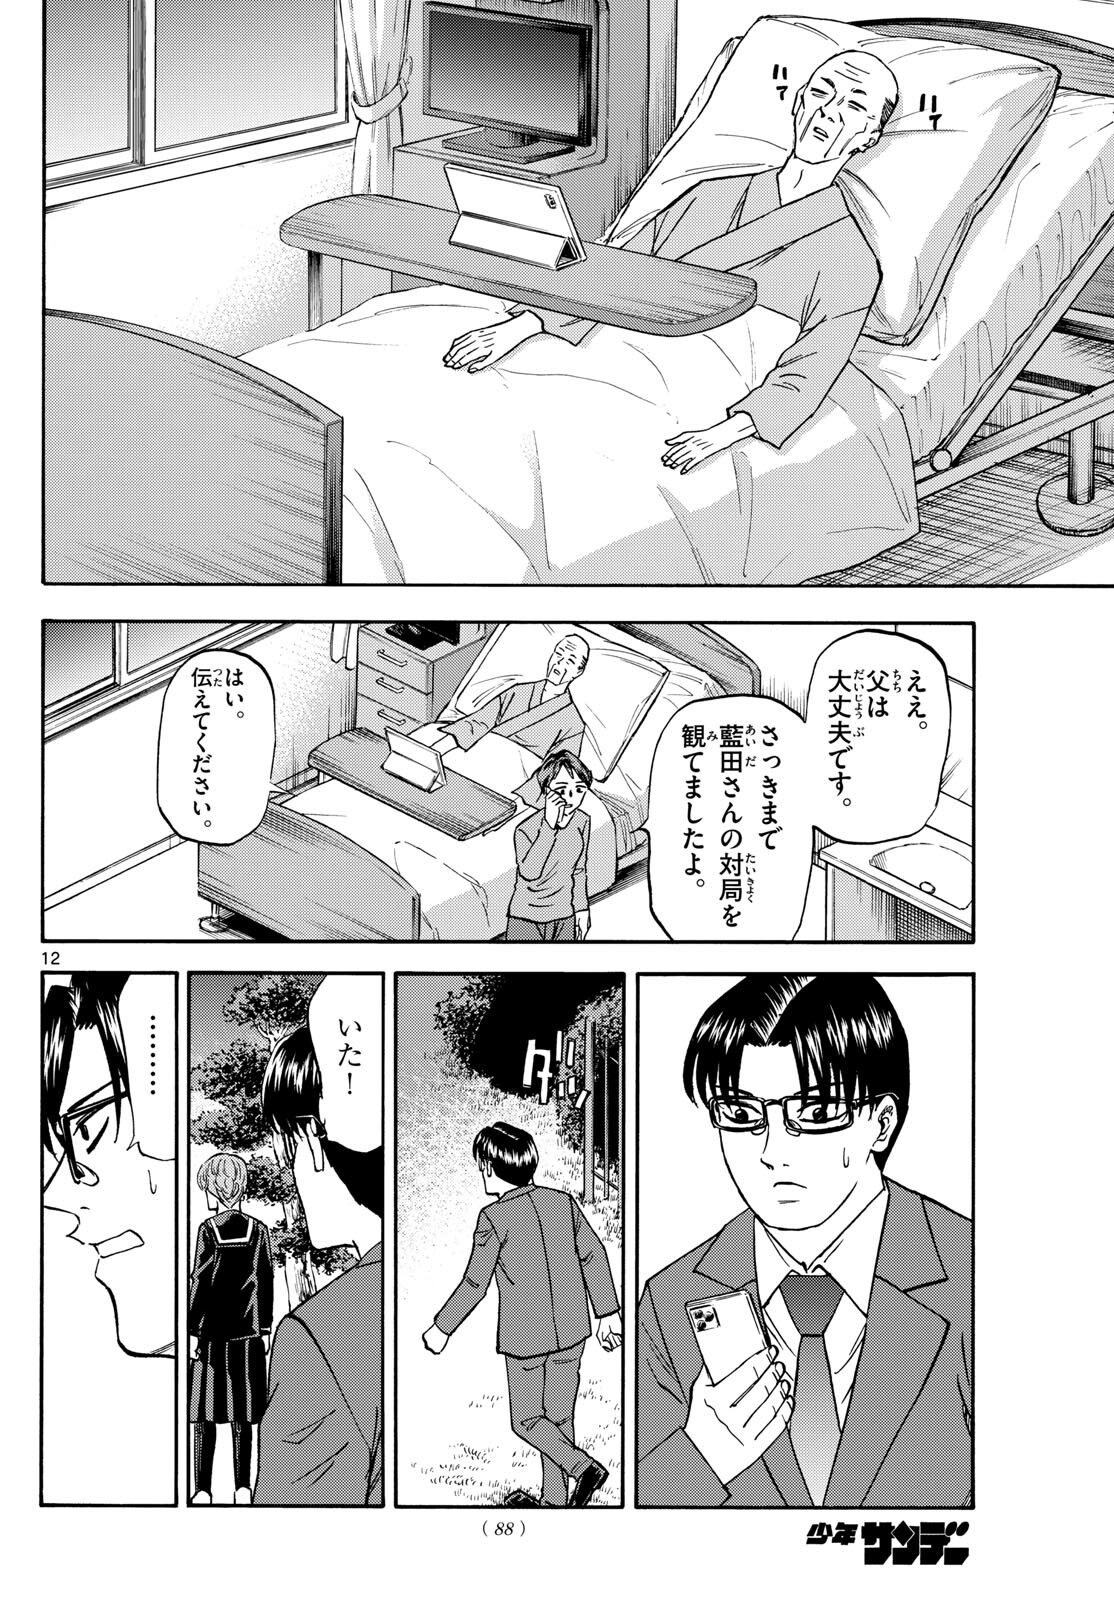 Tatsu to Ichigo - Chapter 176 - Page 12